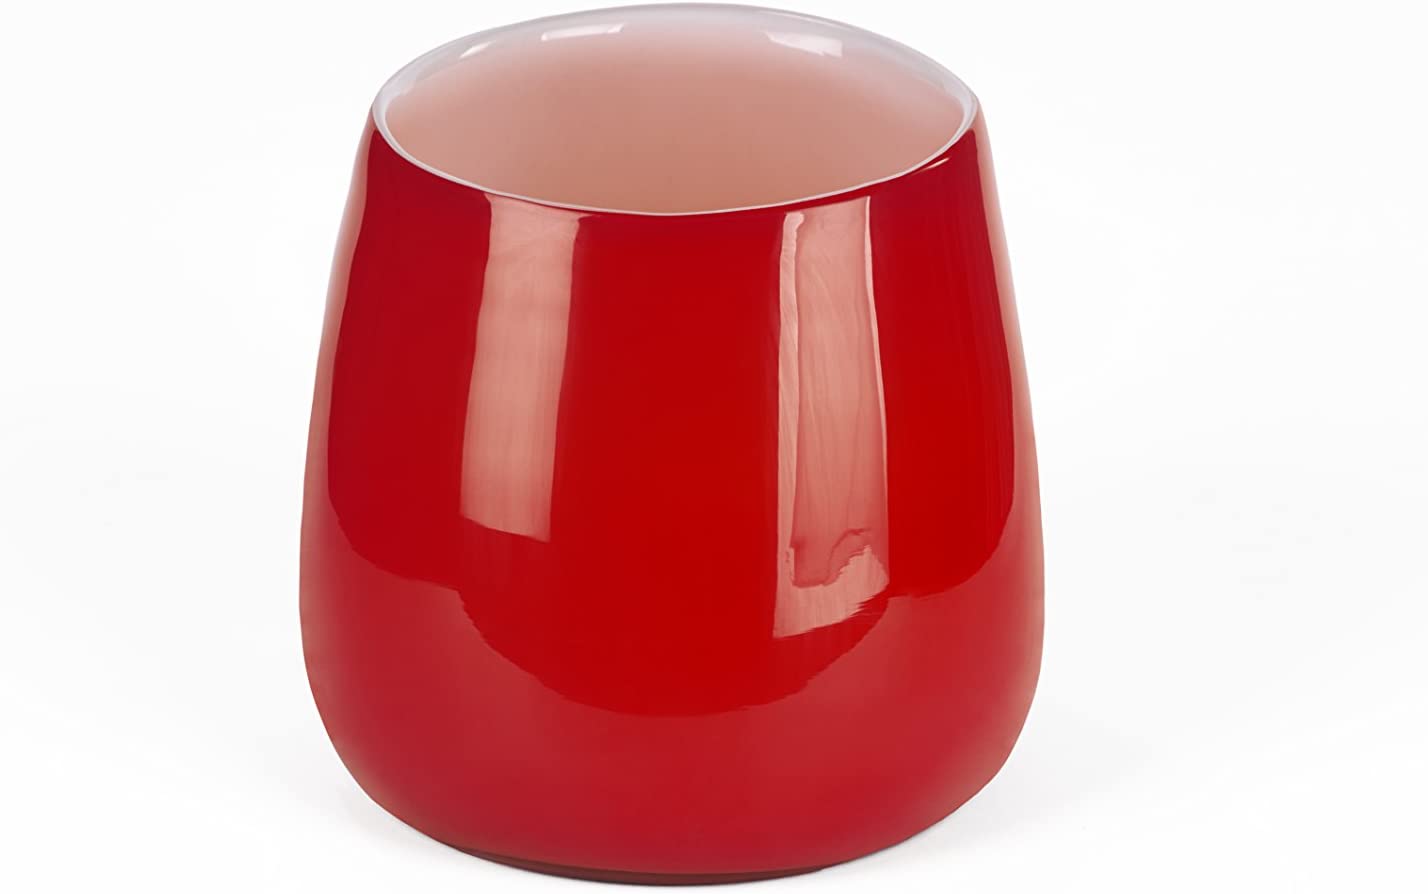 Lambert 16958 Glass Accessories, Red